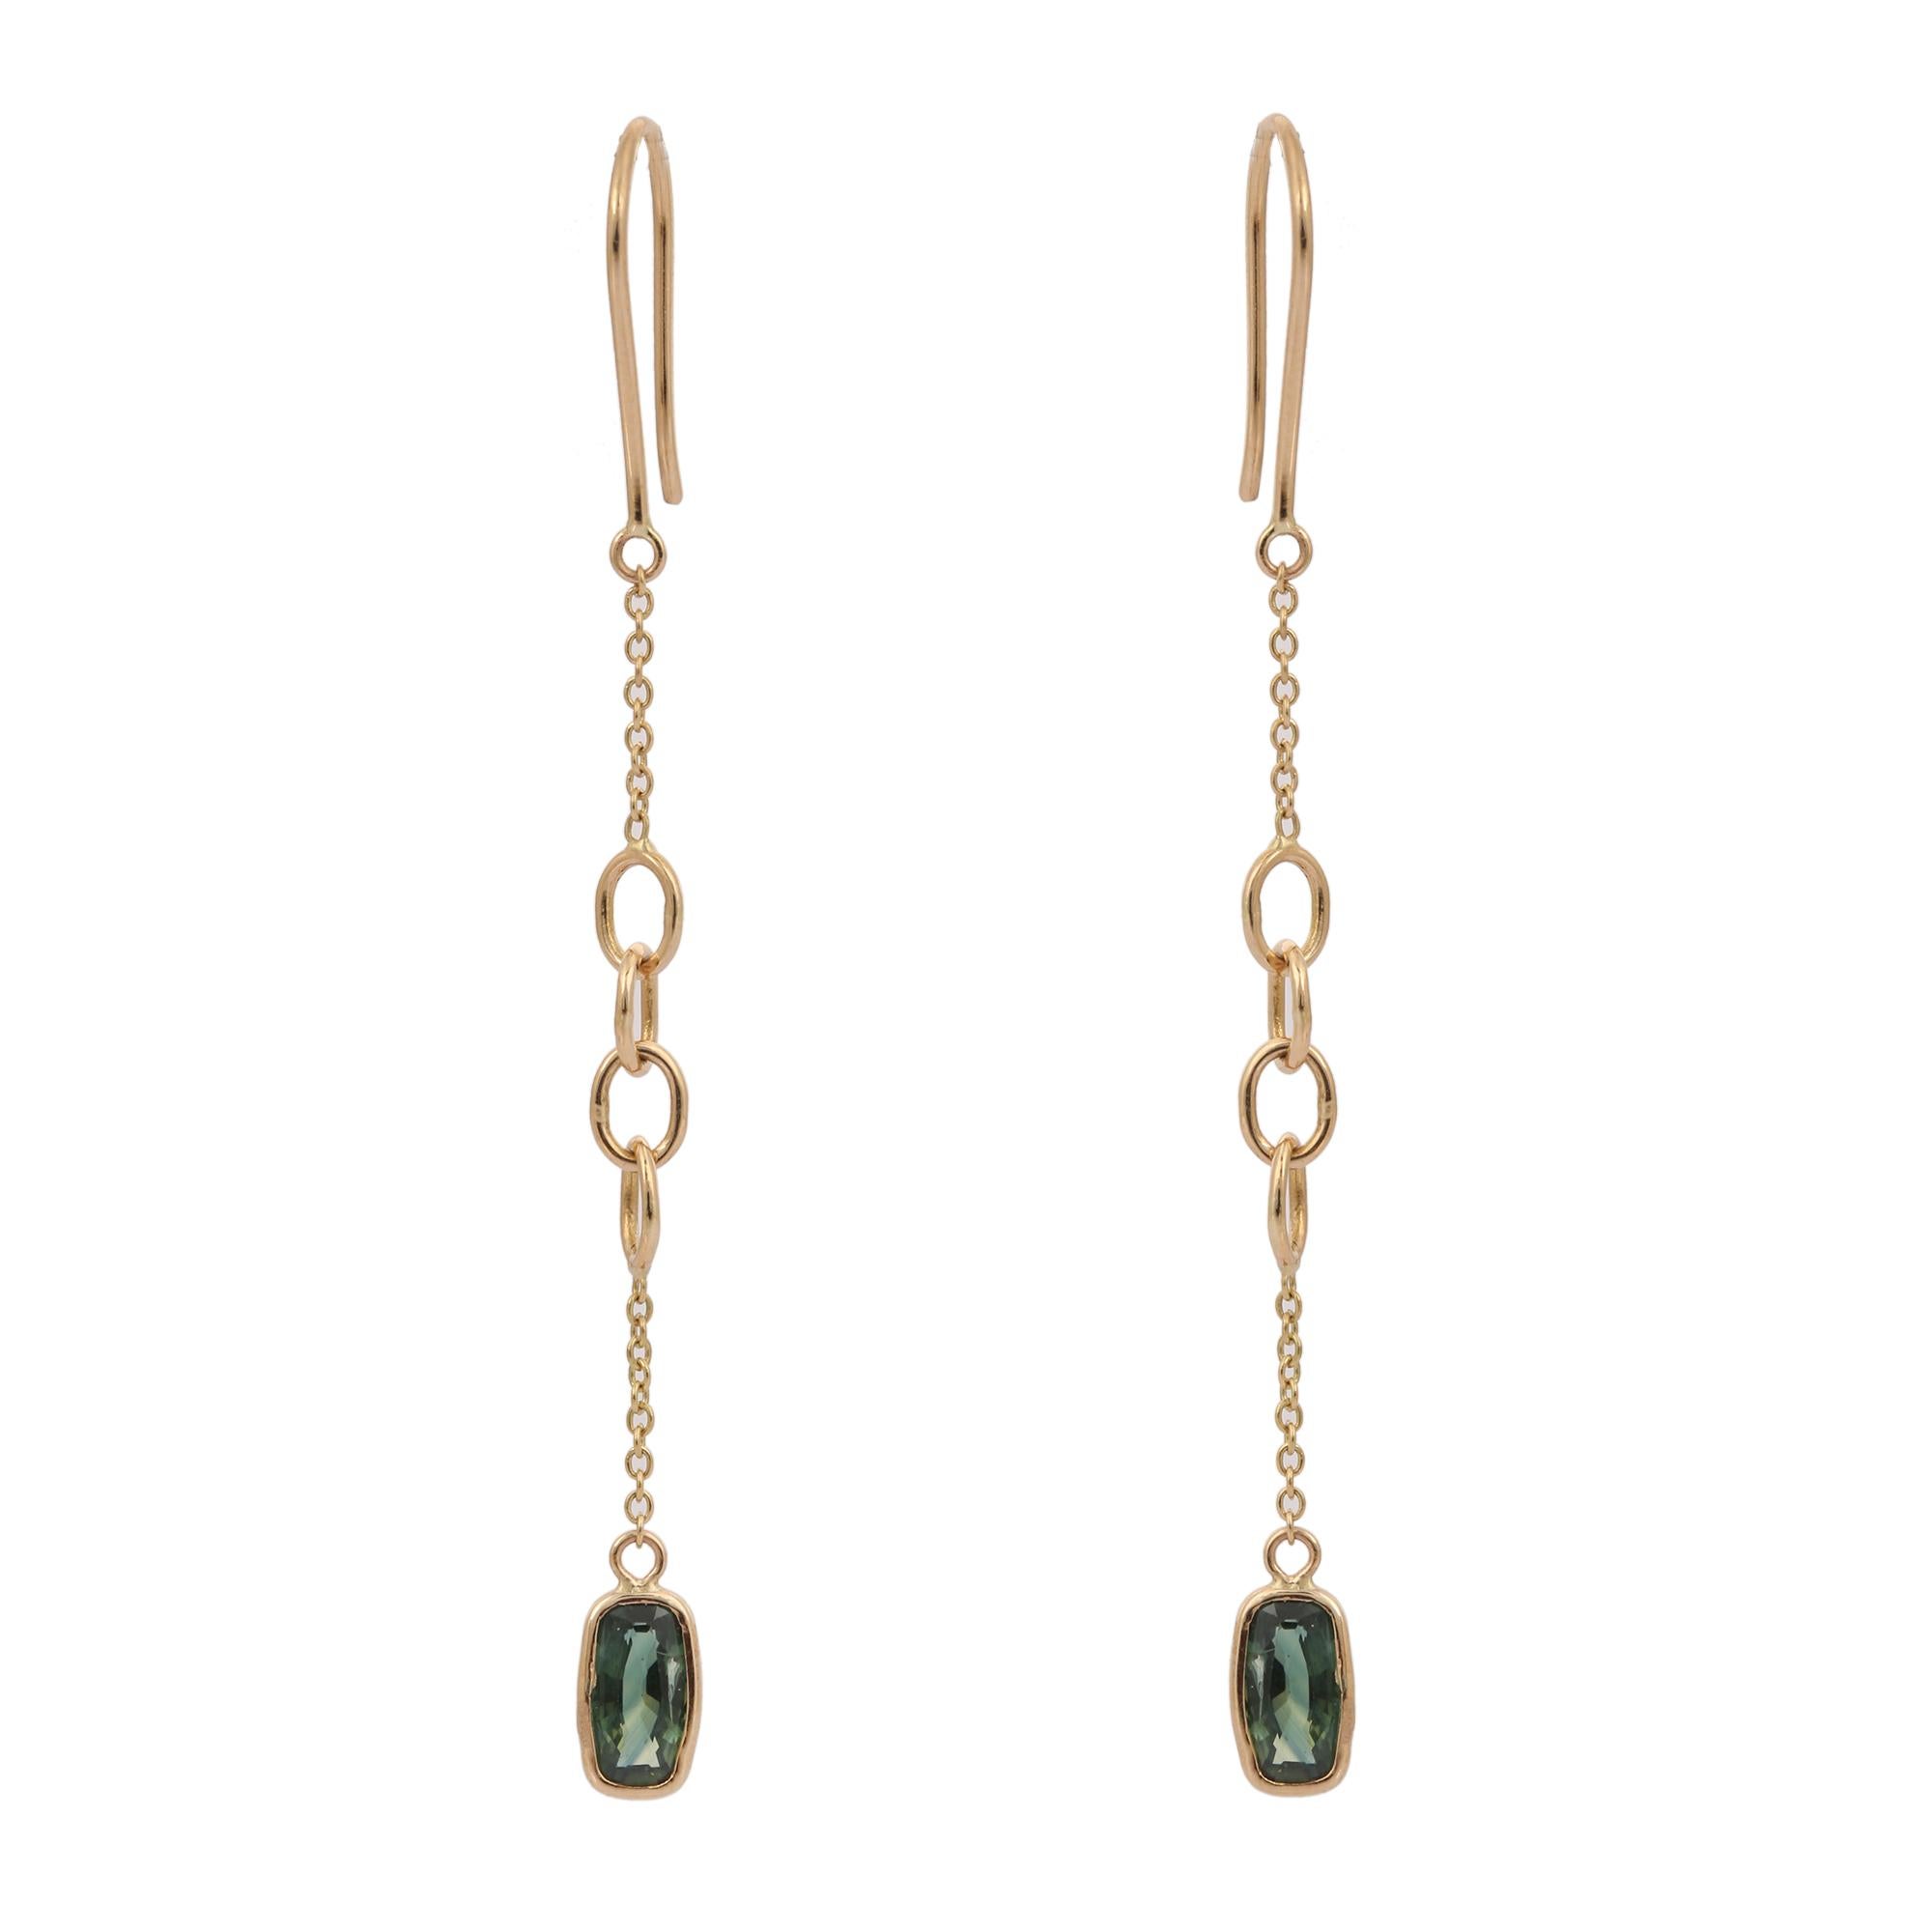 Modernist Minimalist Green Sapphire Dangle Drop Earrings in 18K Yellow Gold